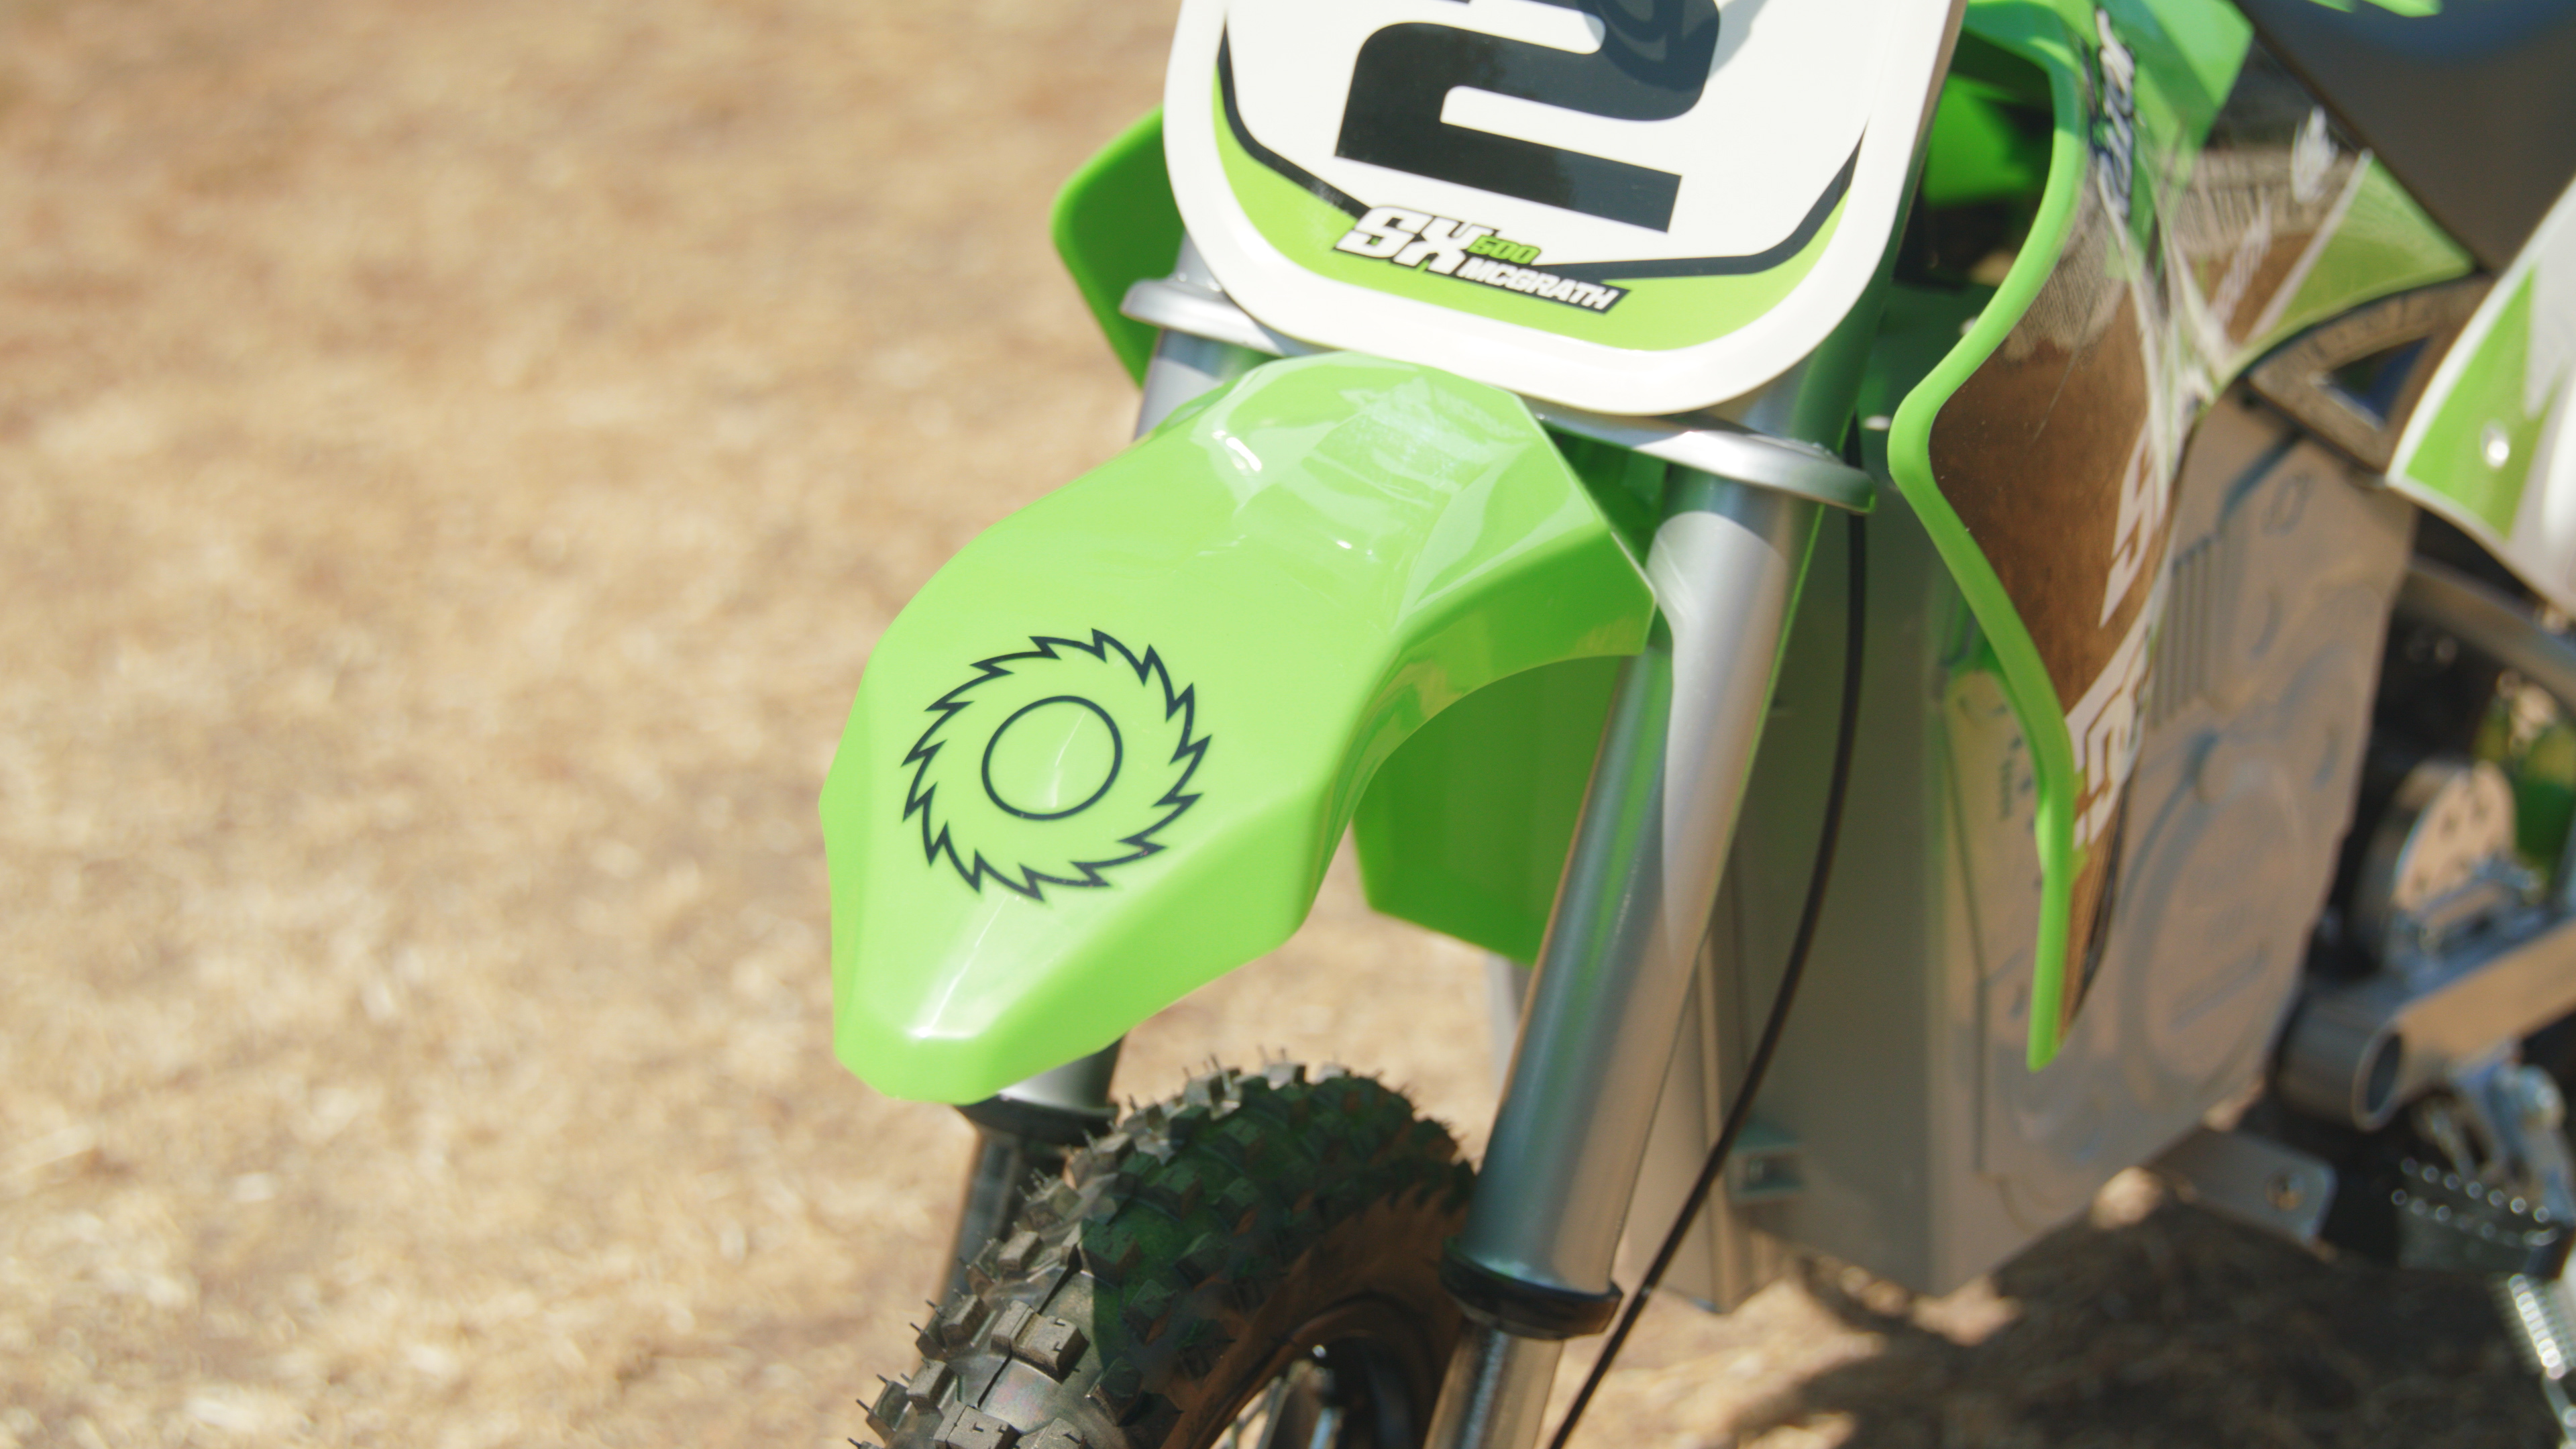 razor dirt bike green